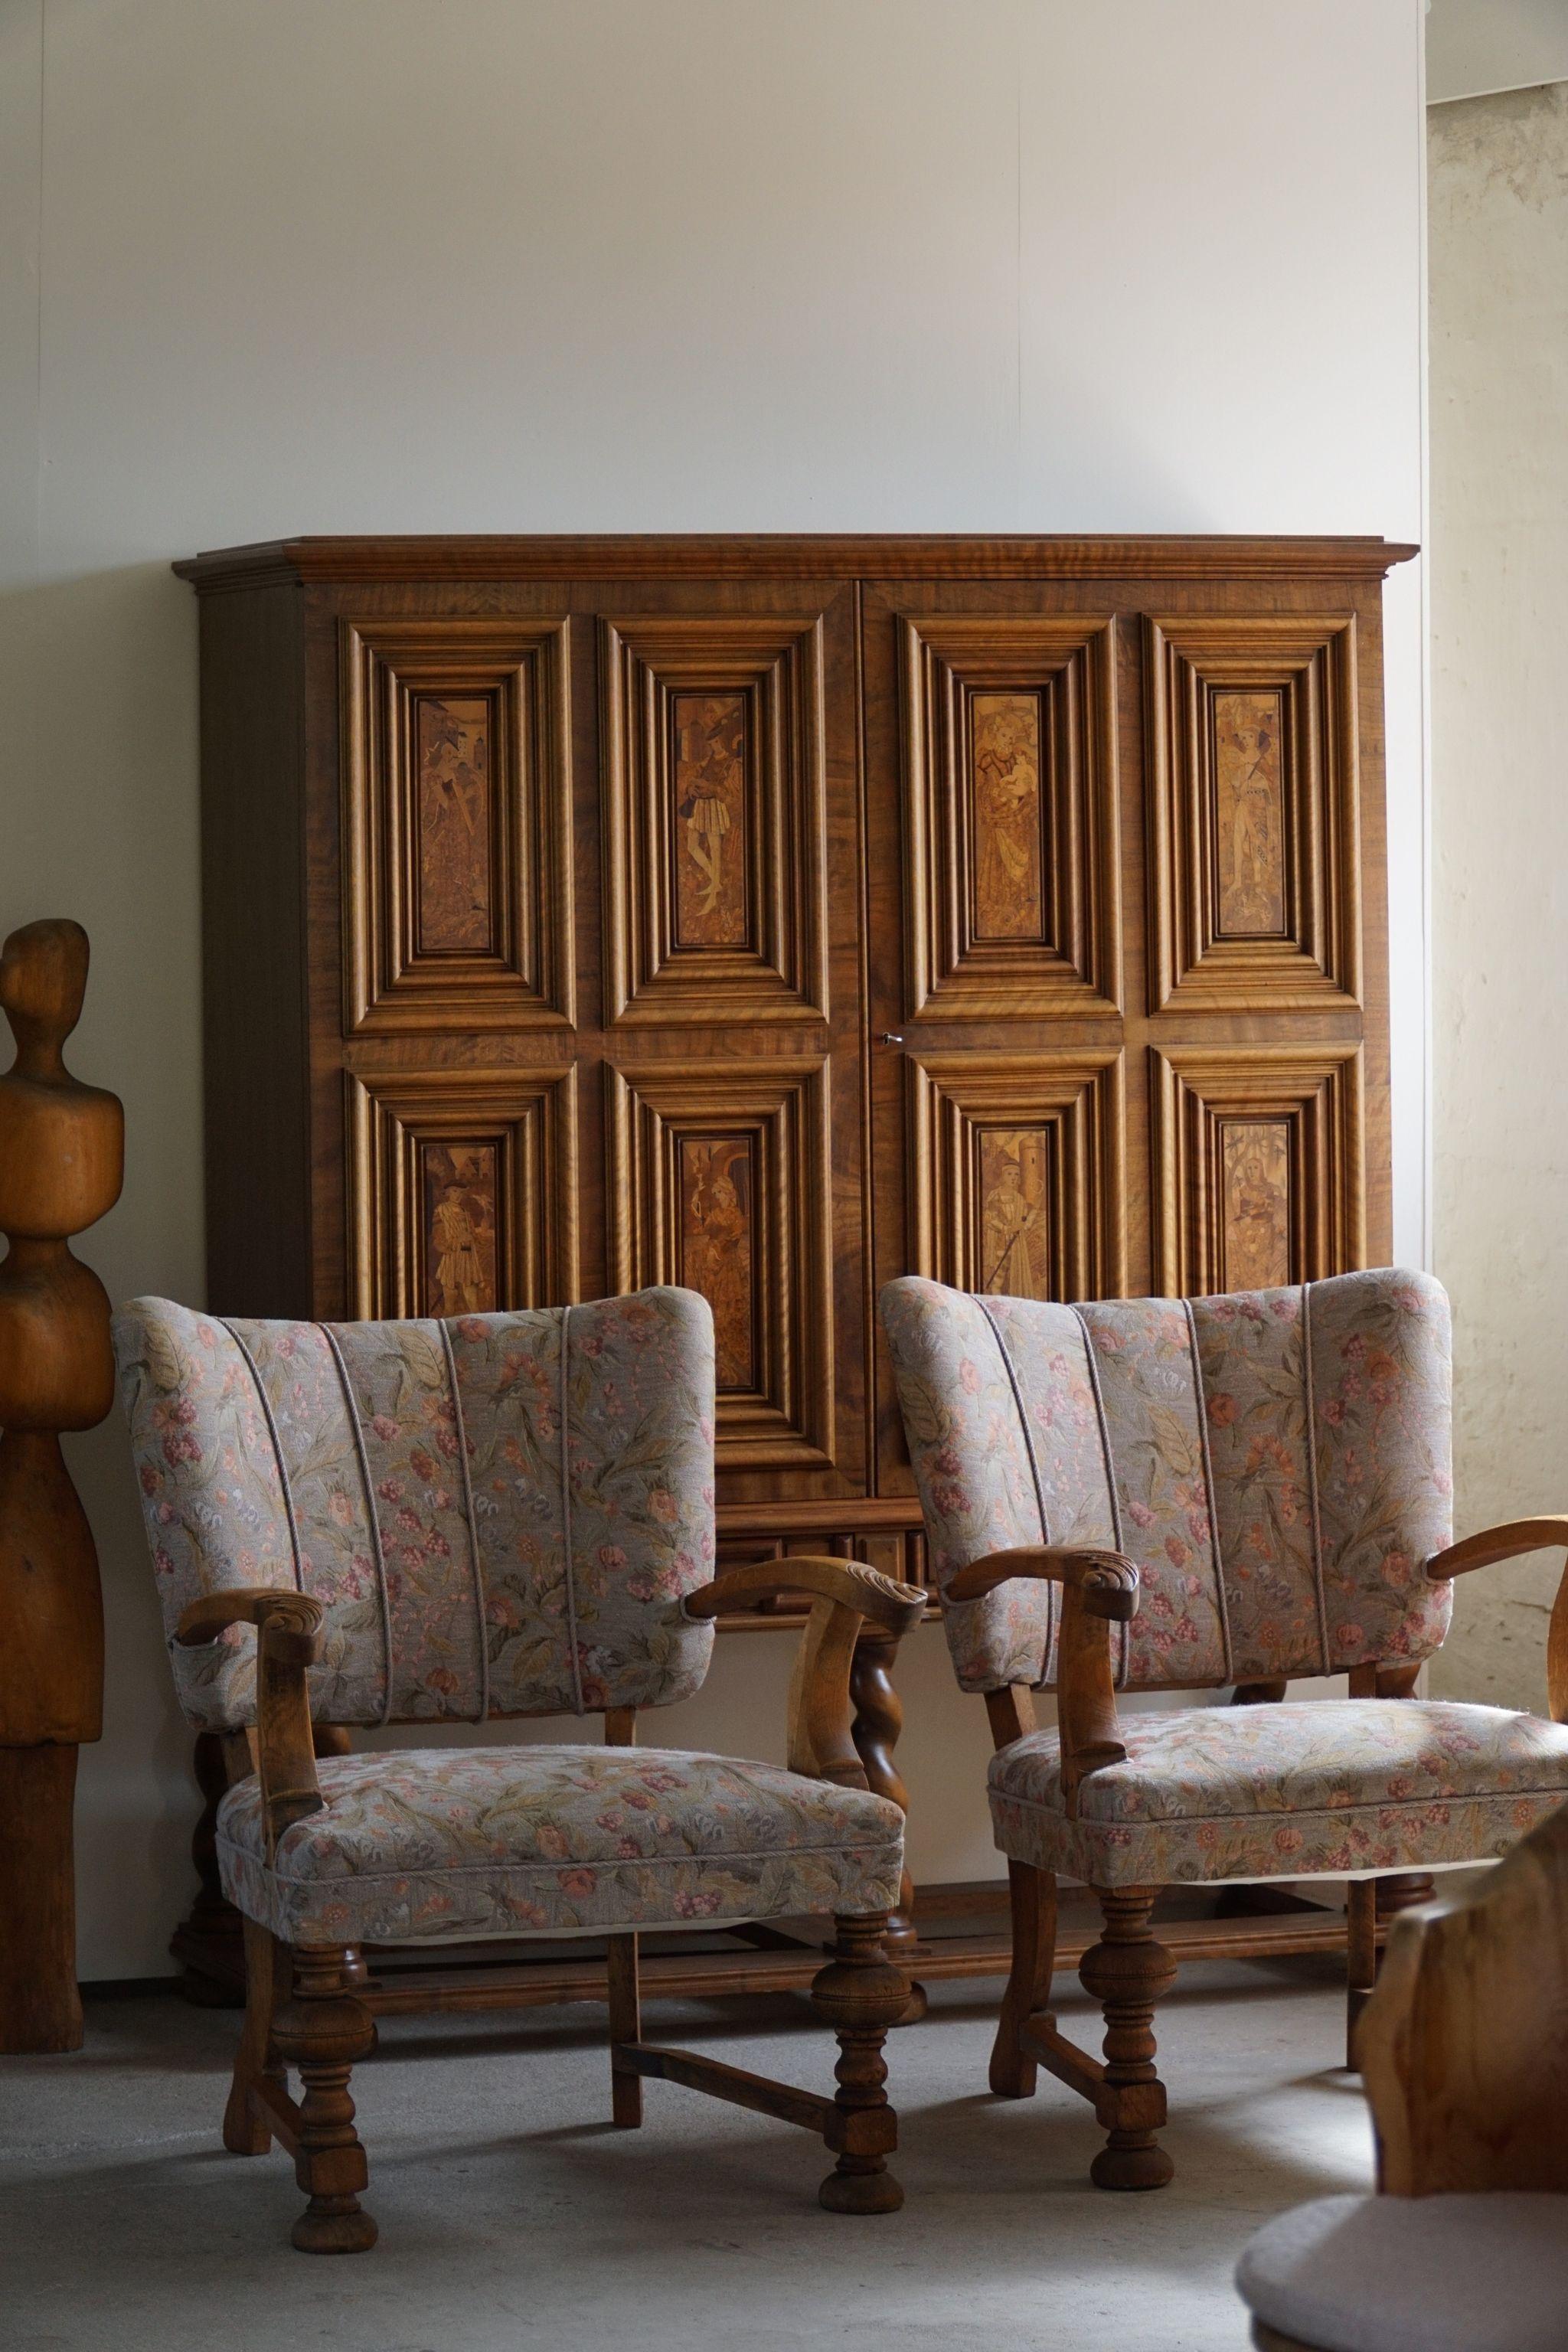 Ein Paar exquisite Sessel aus dem frühen 20. Jahrhundert, gefertigt von einem erfahrenen dänischen Tischler. Diese Stühle, die die anmutigen Kurven und organischen Blumenmotive des Jugendstils aufgreifen, strahlen Eleganz und Handwerkskunst aus.